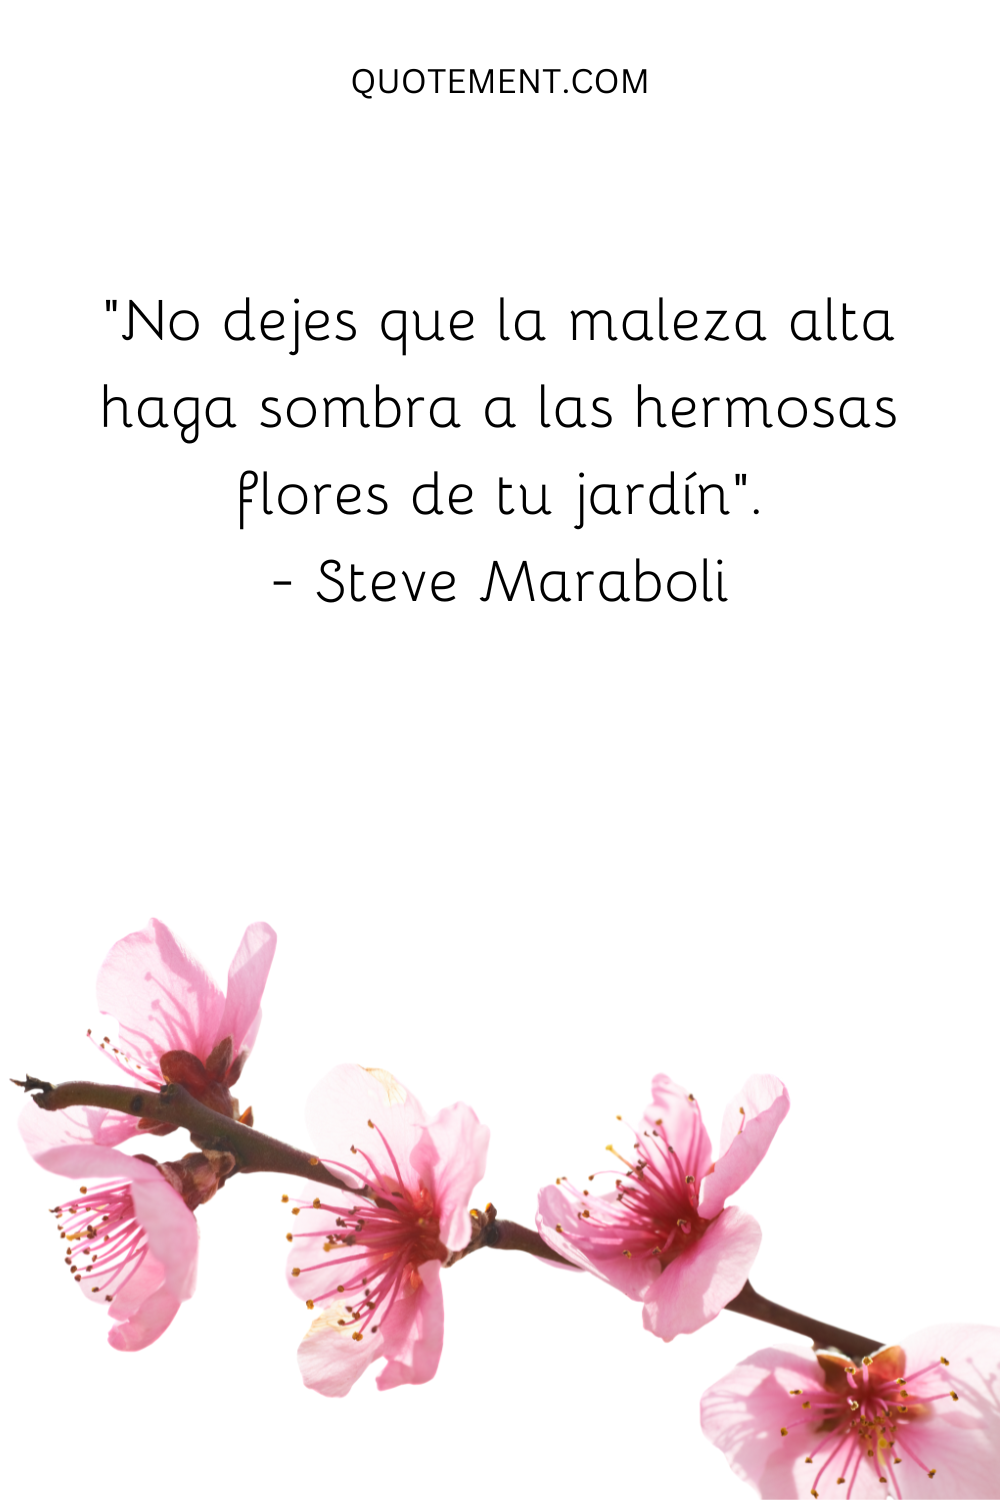 "No dejes que la maleza alta haga sombra a las hermosas flores de tu jardín". - Steve Maraboli